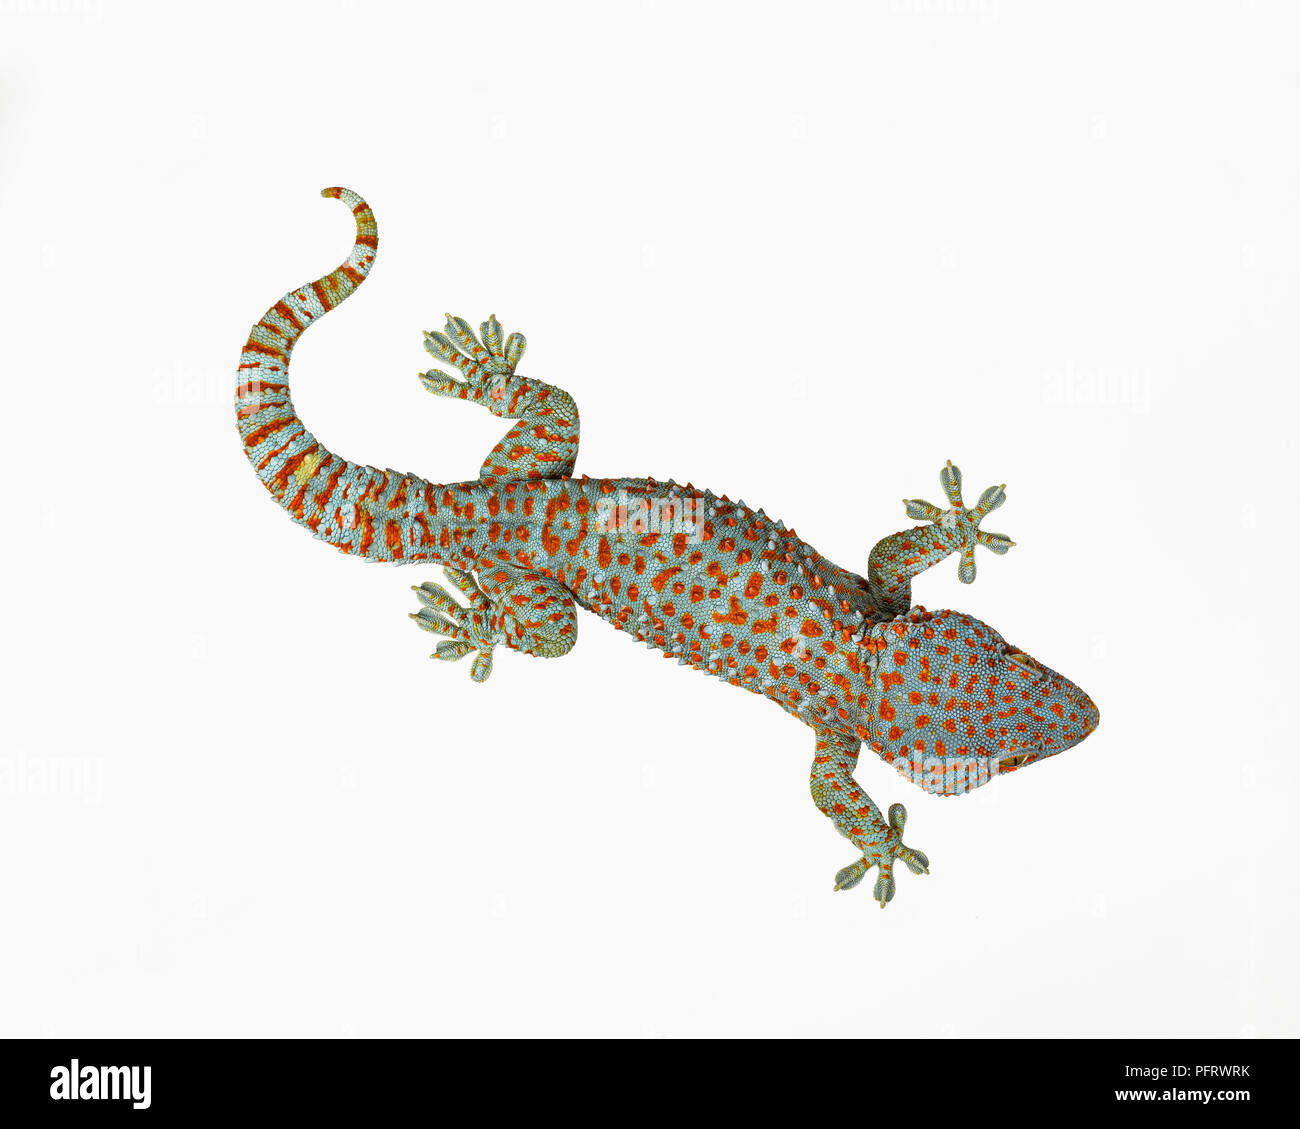 Tokay gecko Stockfoto